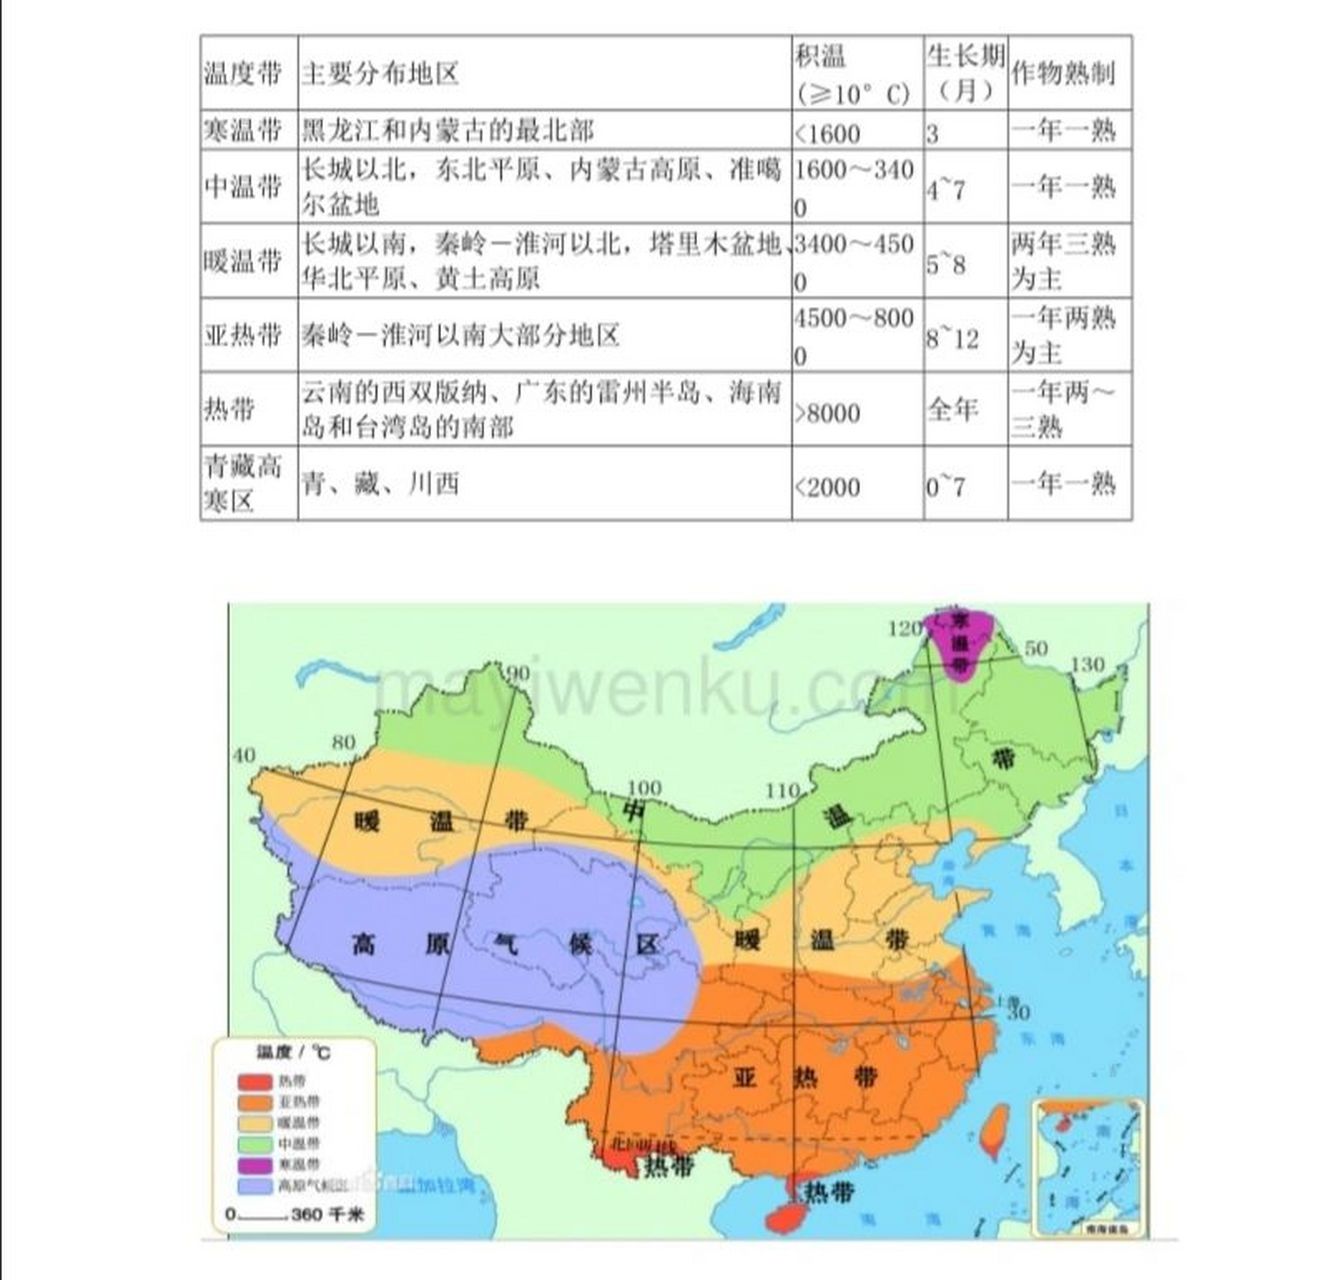 中国的温度带和干湿分区的划分 干湿区和温度带以及种植的农作物,看图